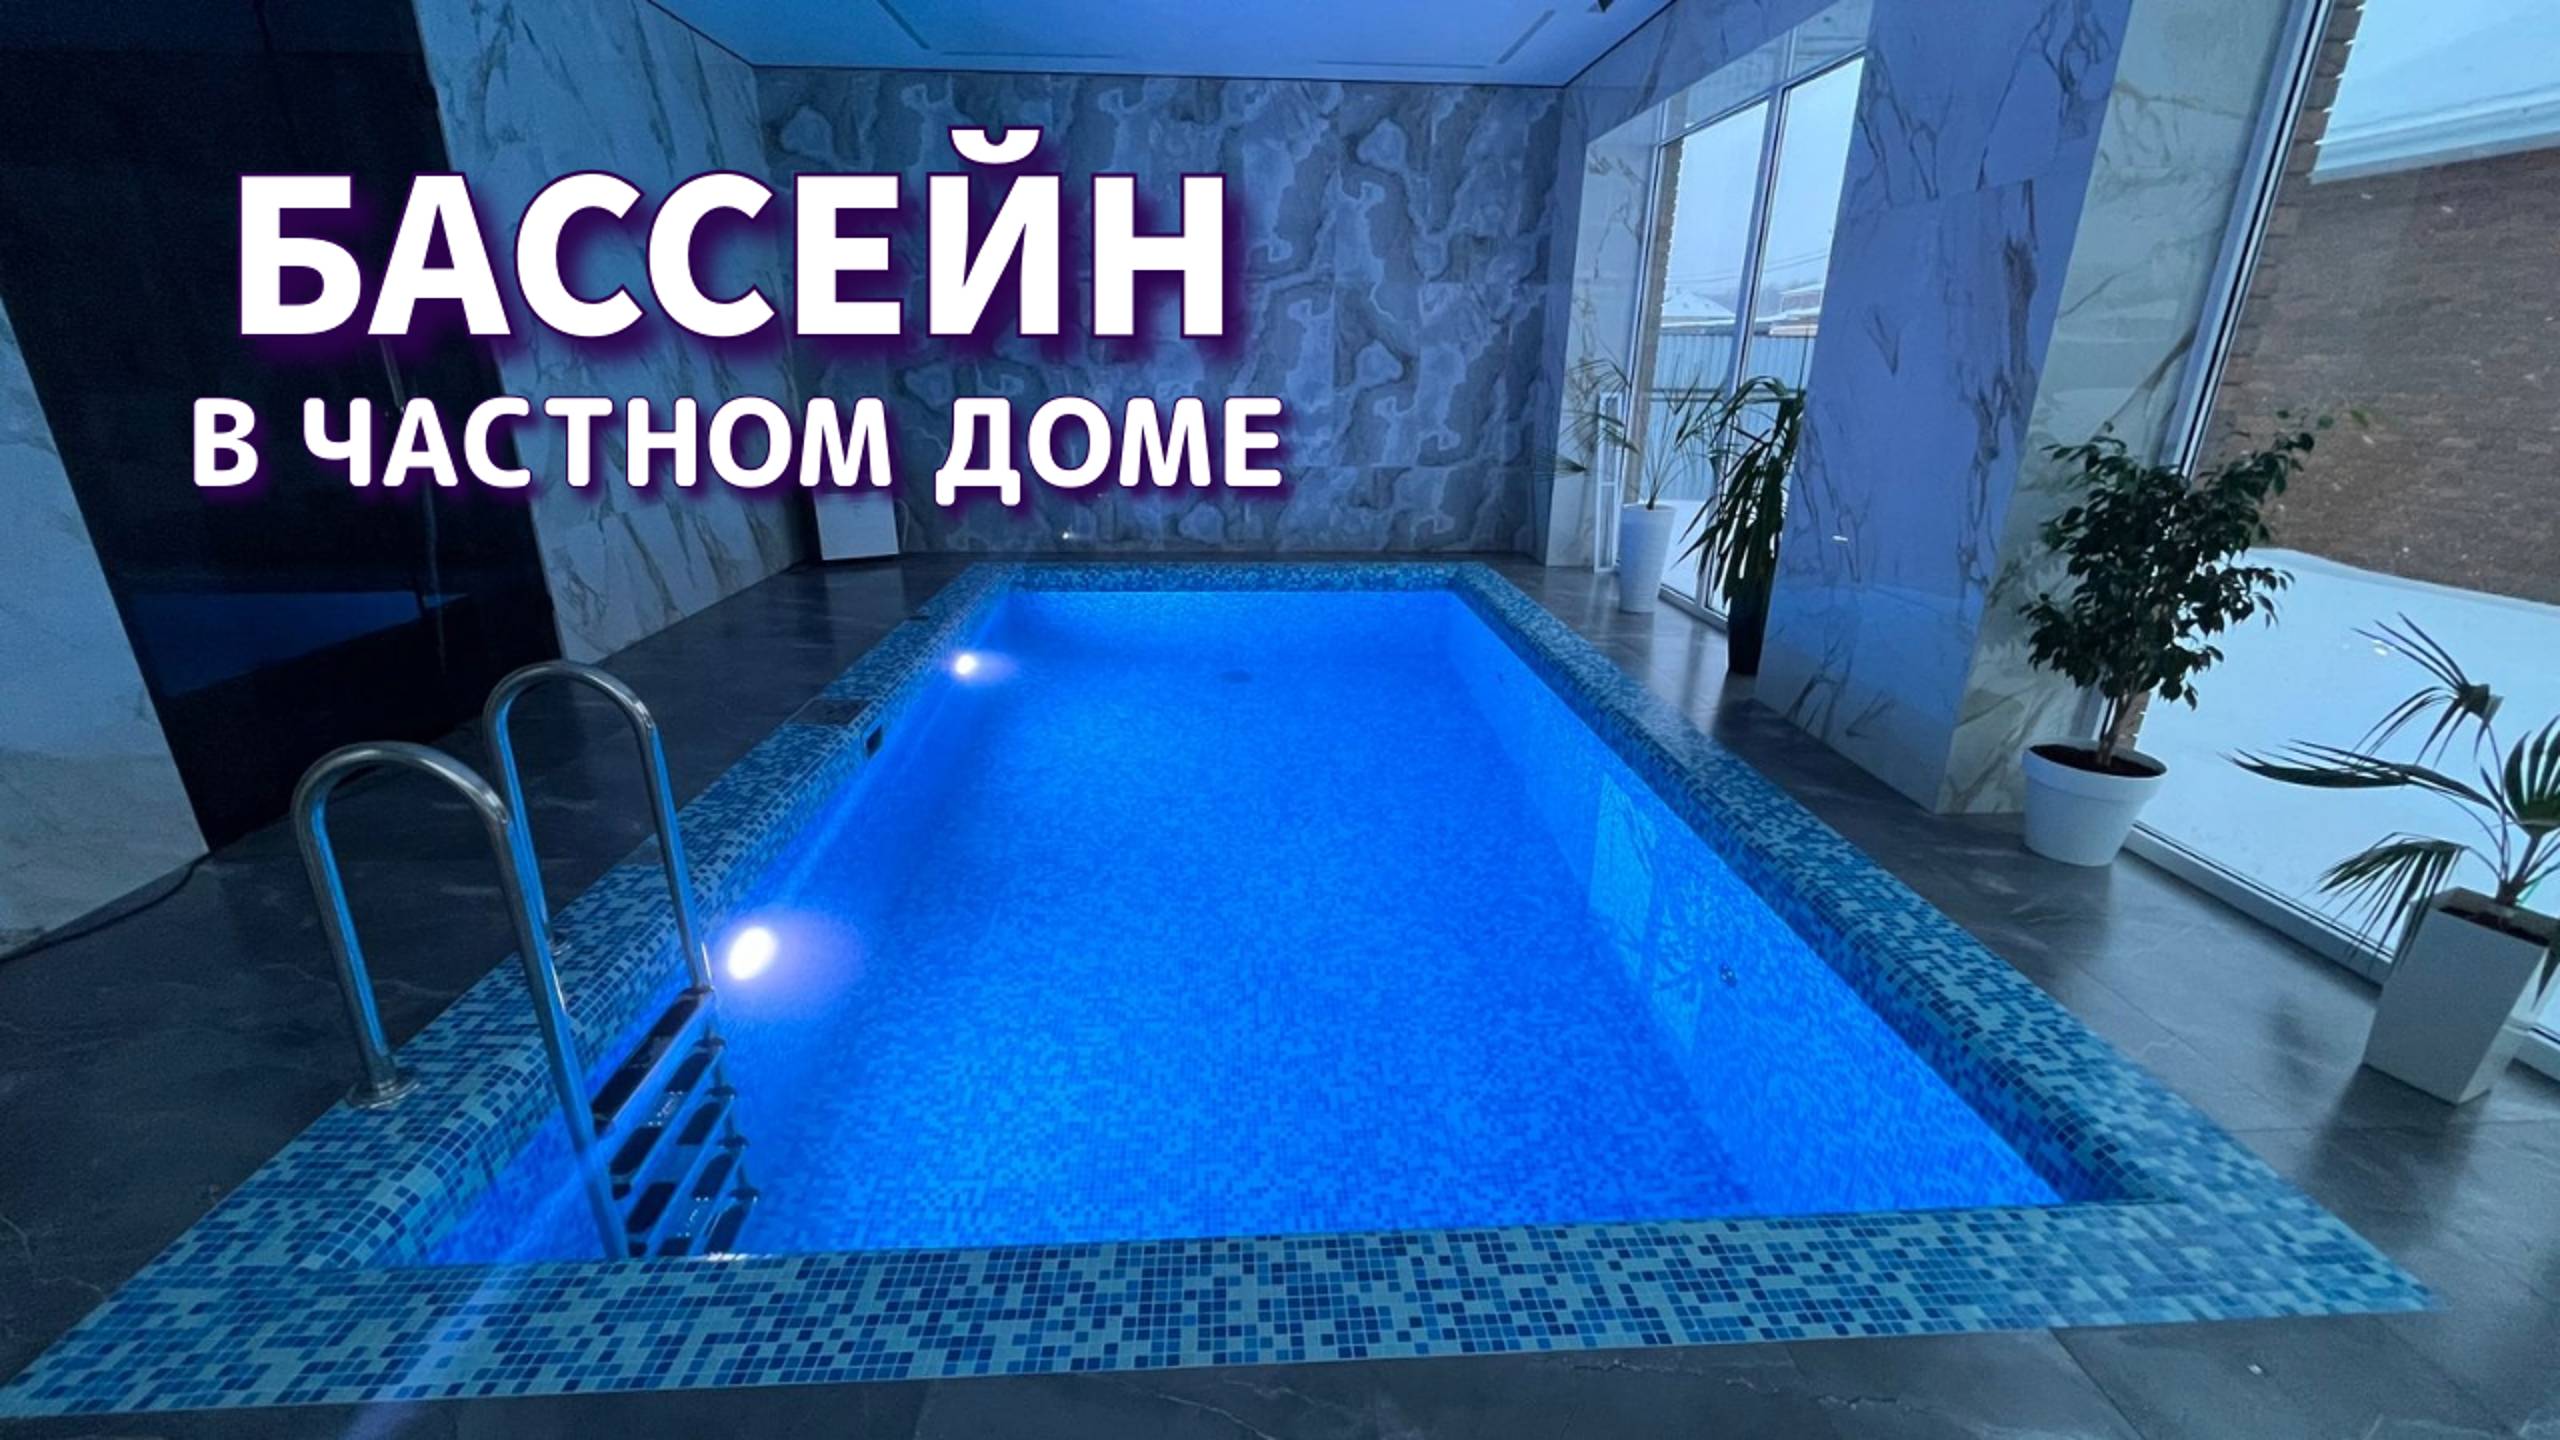 Скиммерный бассейн в частном доме. #бассейны #строительствобассейнов #бассейнподключ